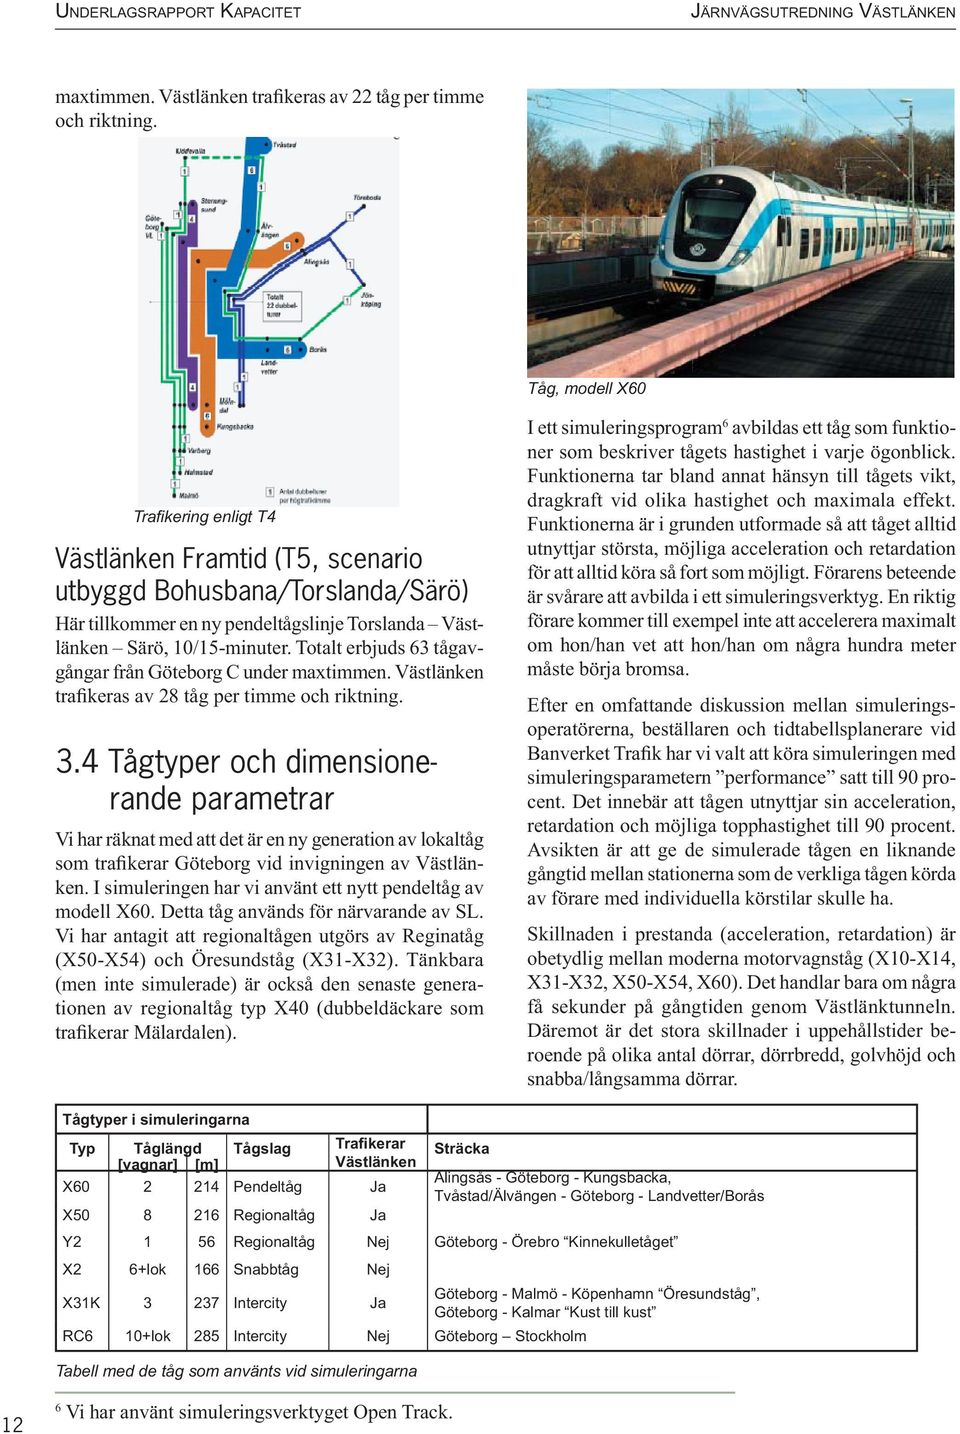 Totalt erbjuds 63 tågavgångar från Göteborg C under maxtimmen. Västlänken trafikeras av 28 tåg per timme och riktning. 3.